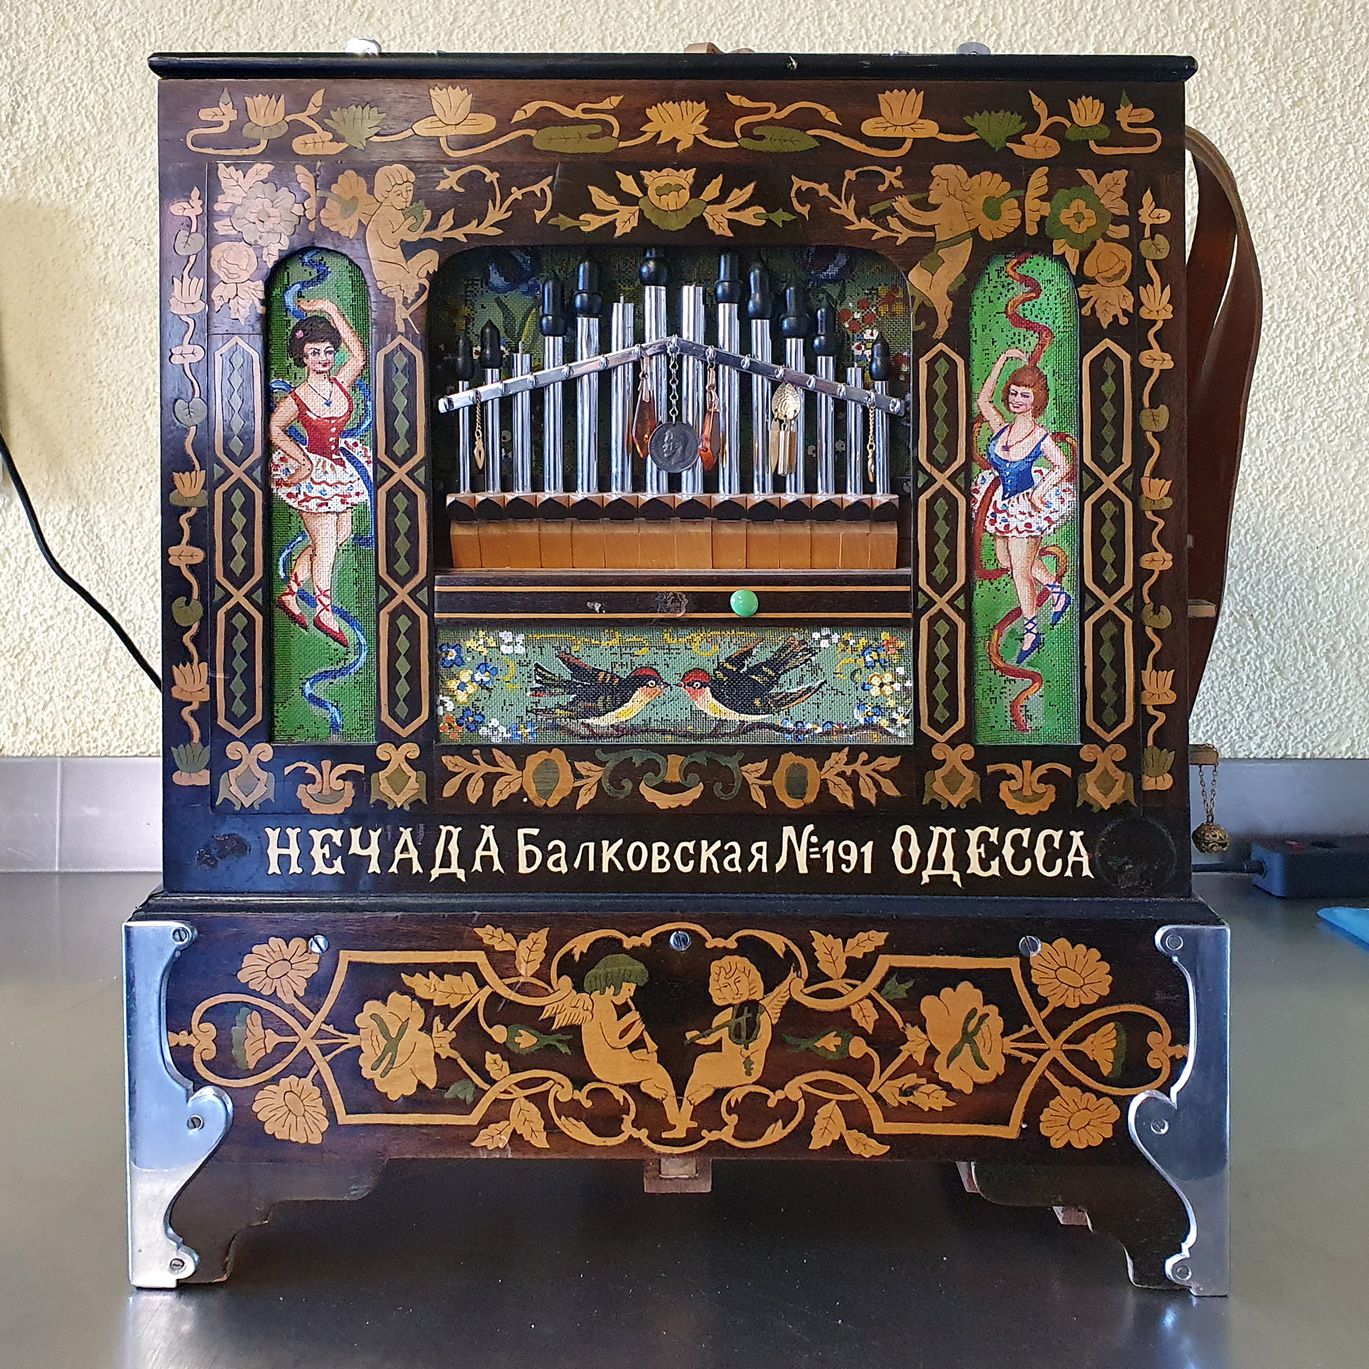 Street Organ from I.Nechada factory (Odessa) around 1910 
Un orgue merveilleux d&hellip;